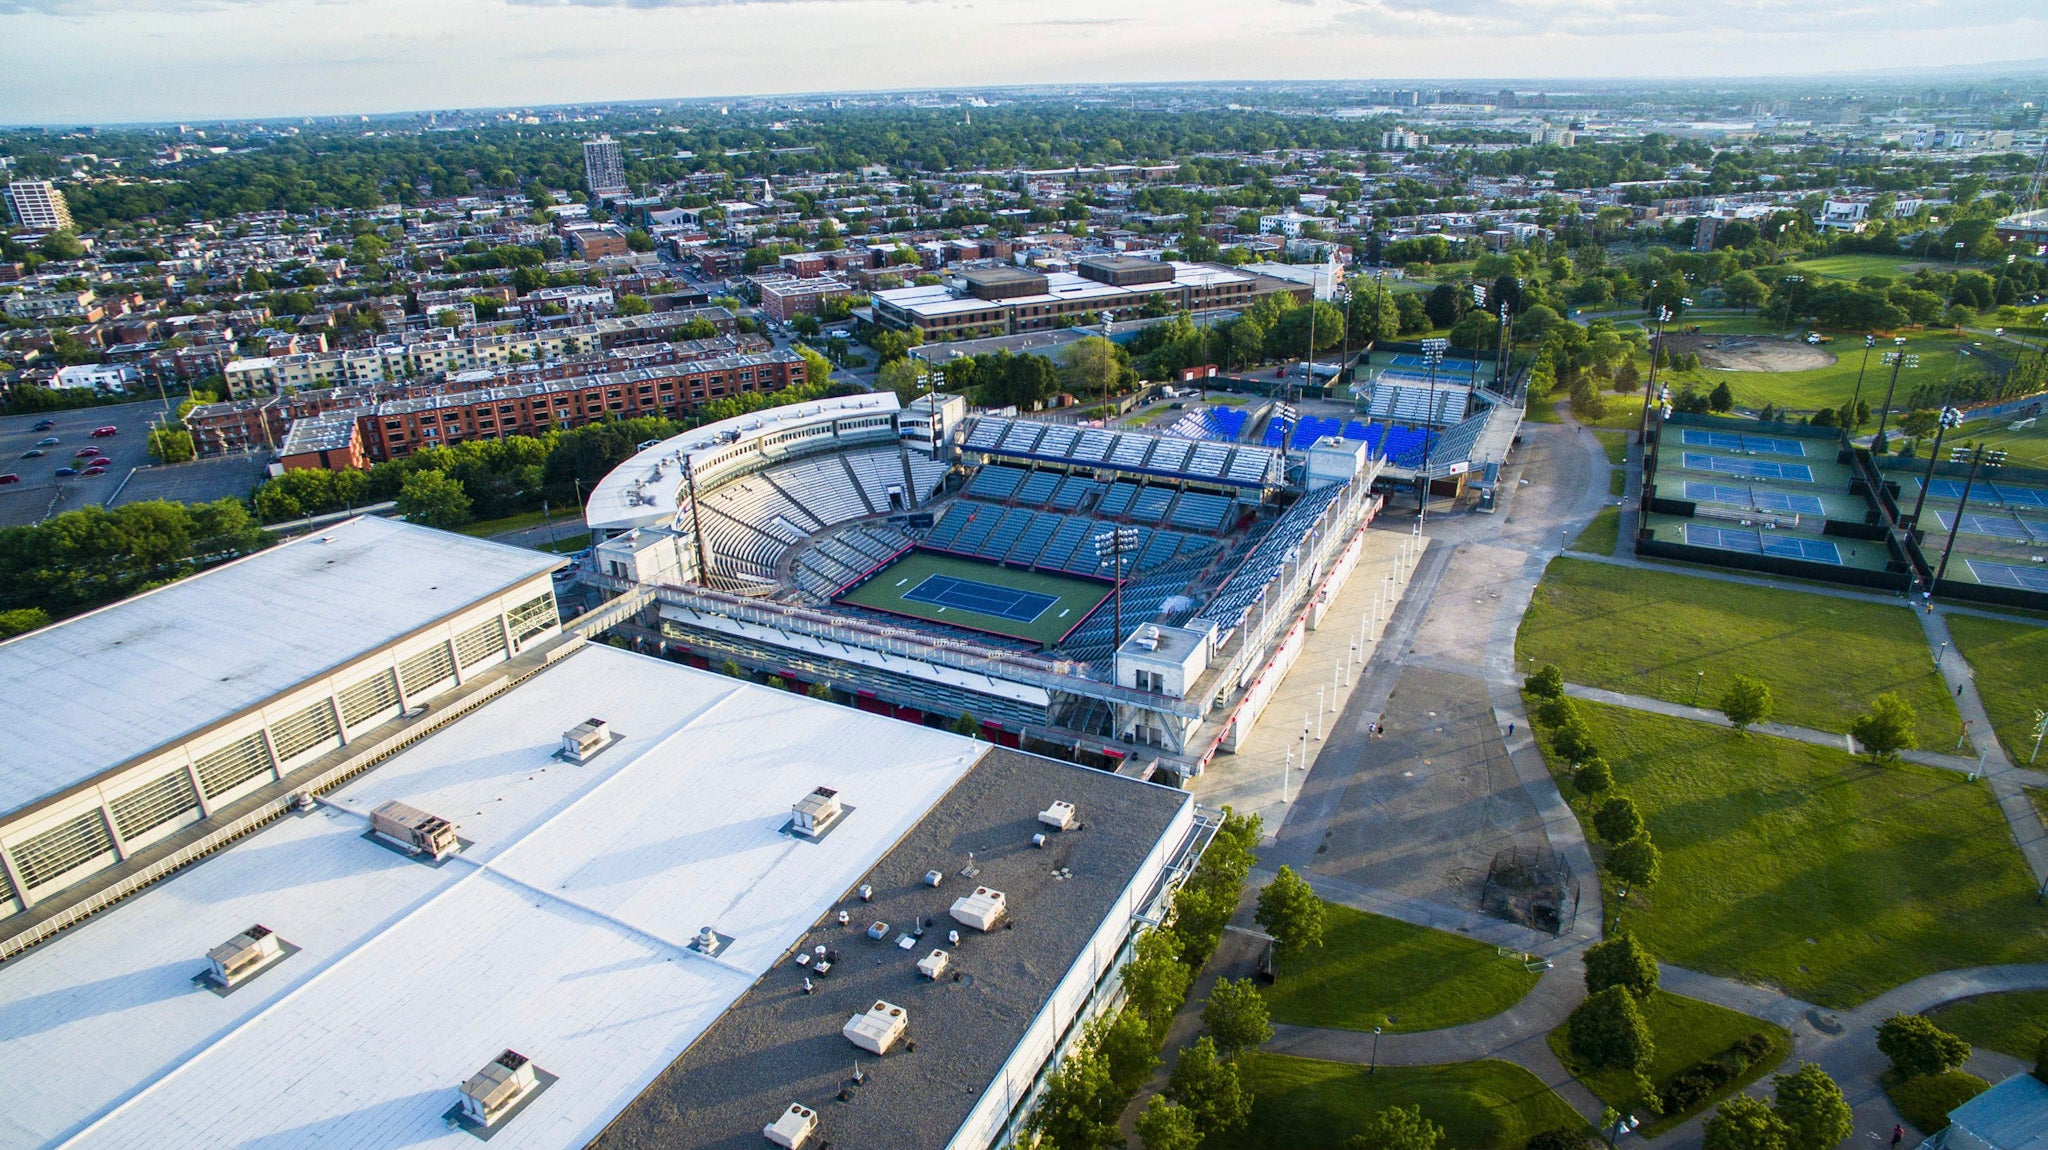 professional tennis stadium